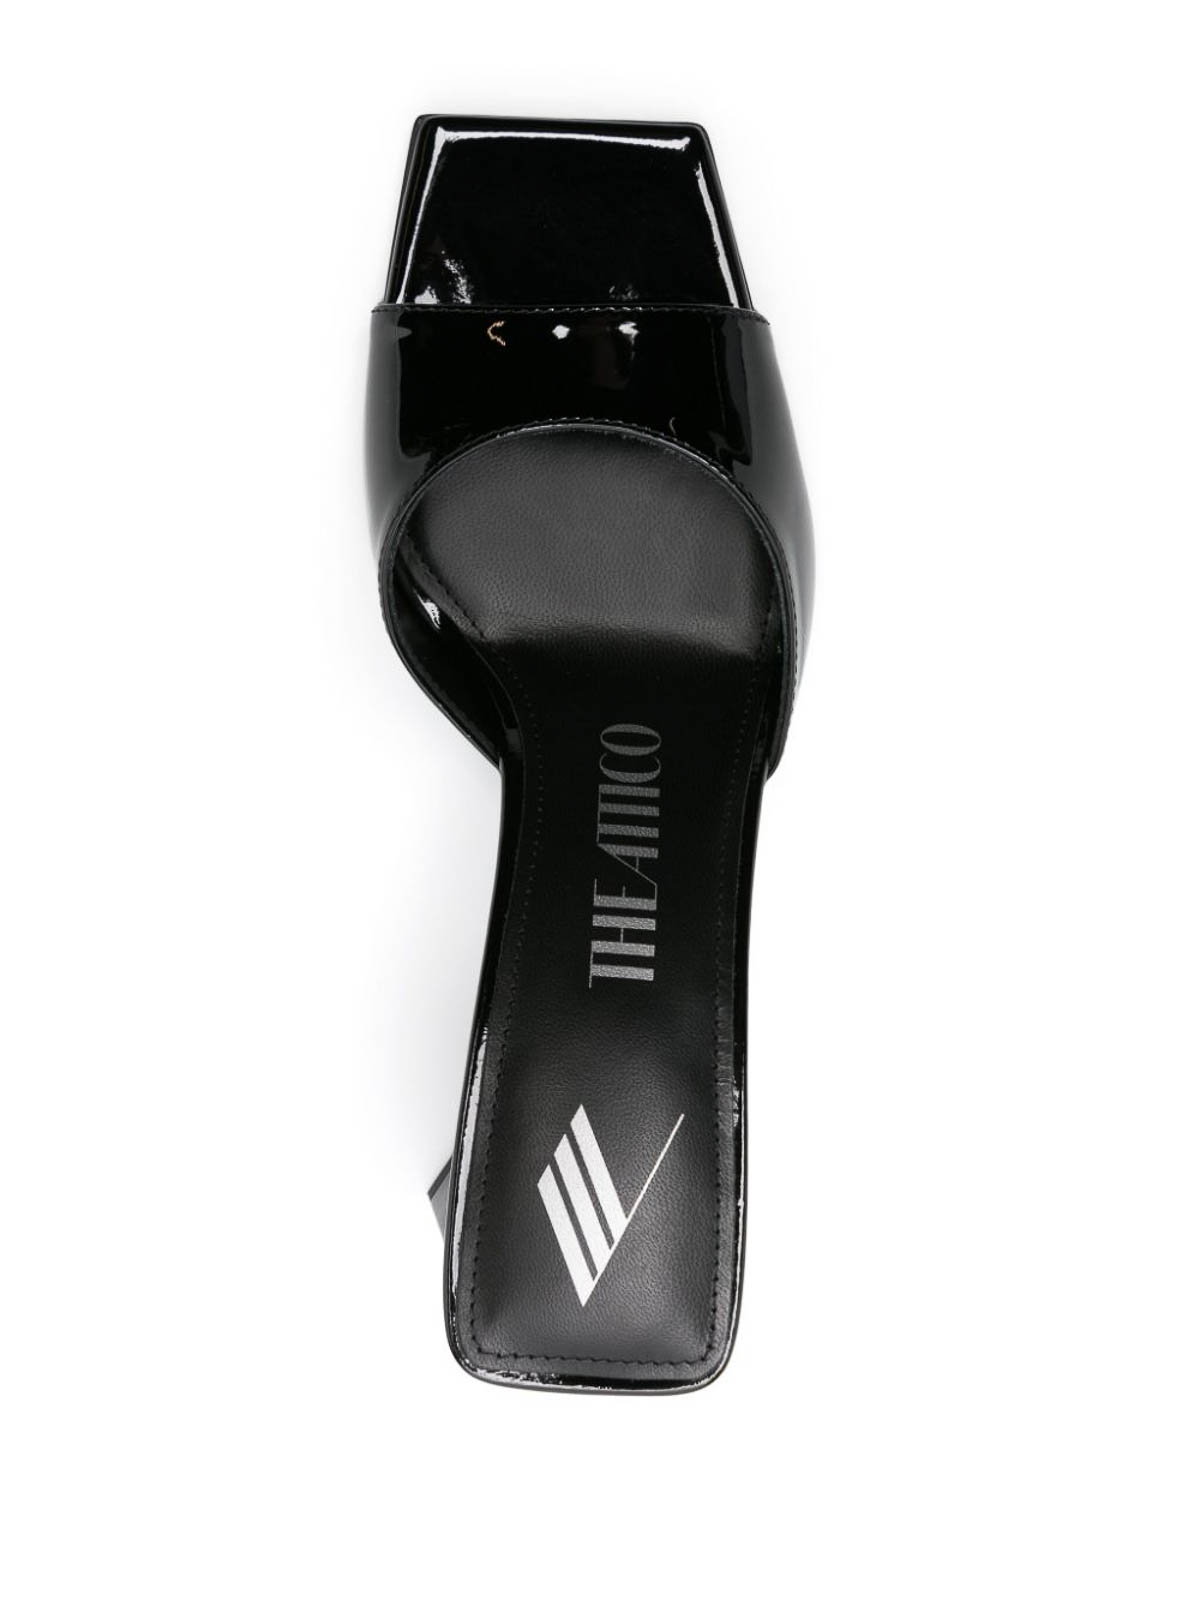 Shop Attico Mini Devon Patent Leather Heel Mules In Black